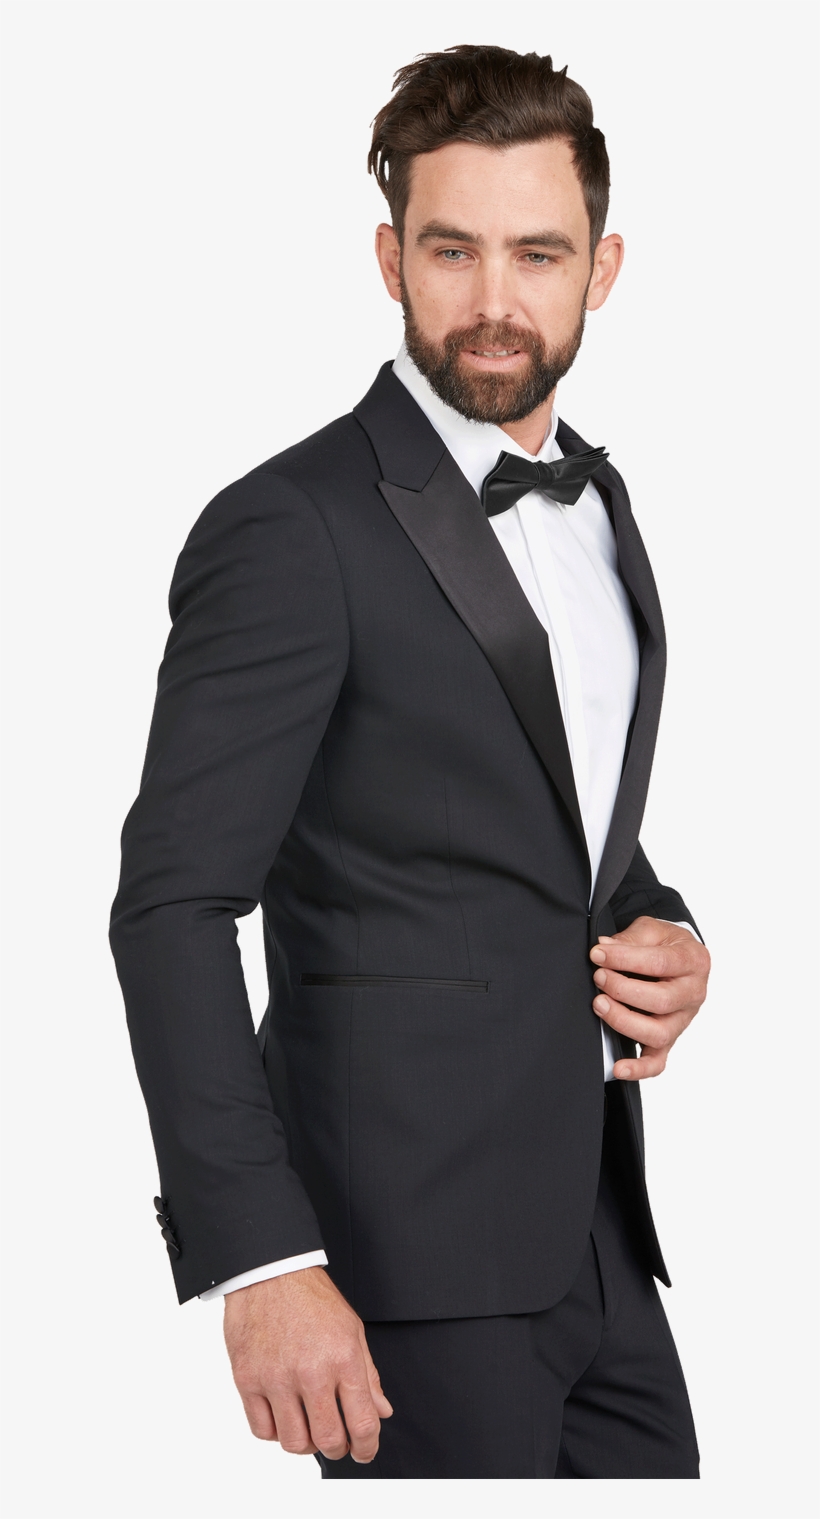 Princeton Texture Tuxedo 81b - Suit, transparent png #9622747